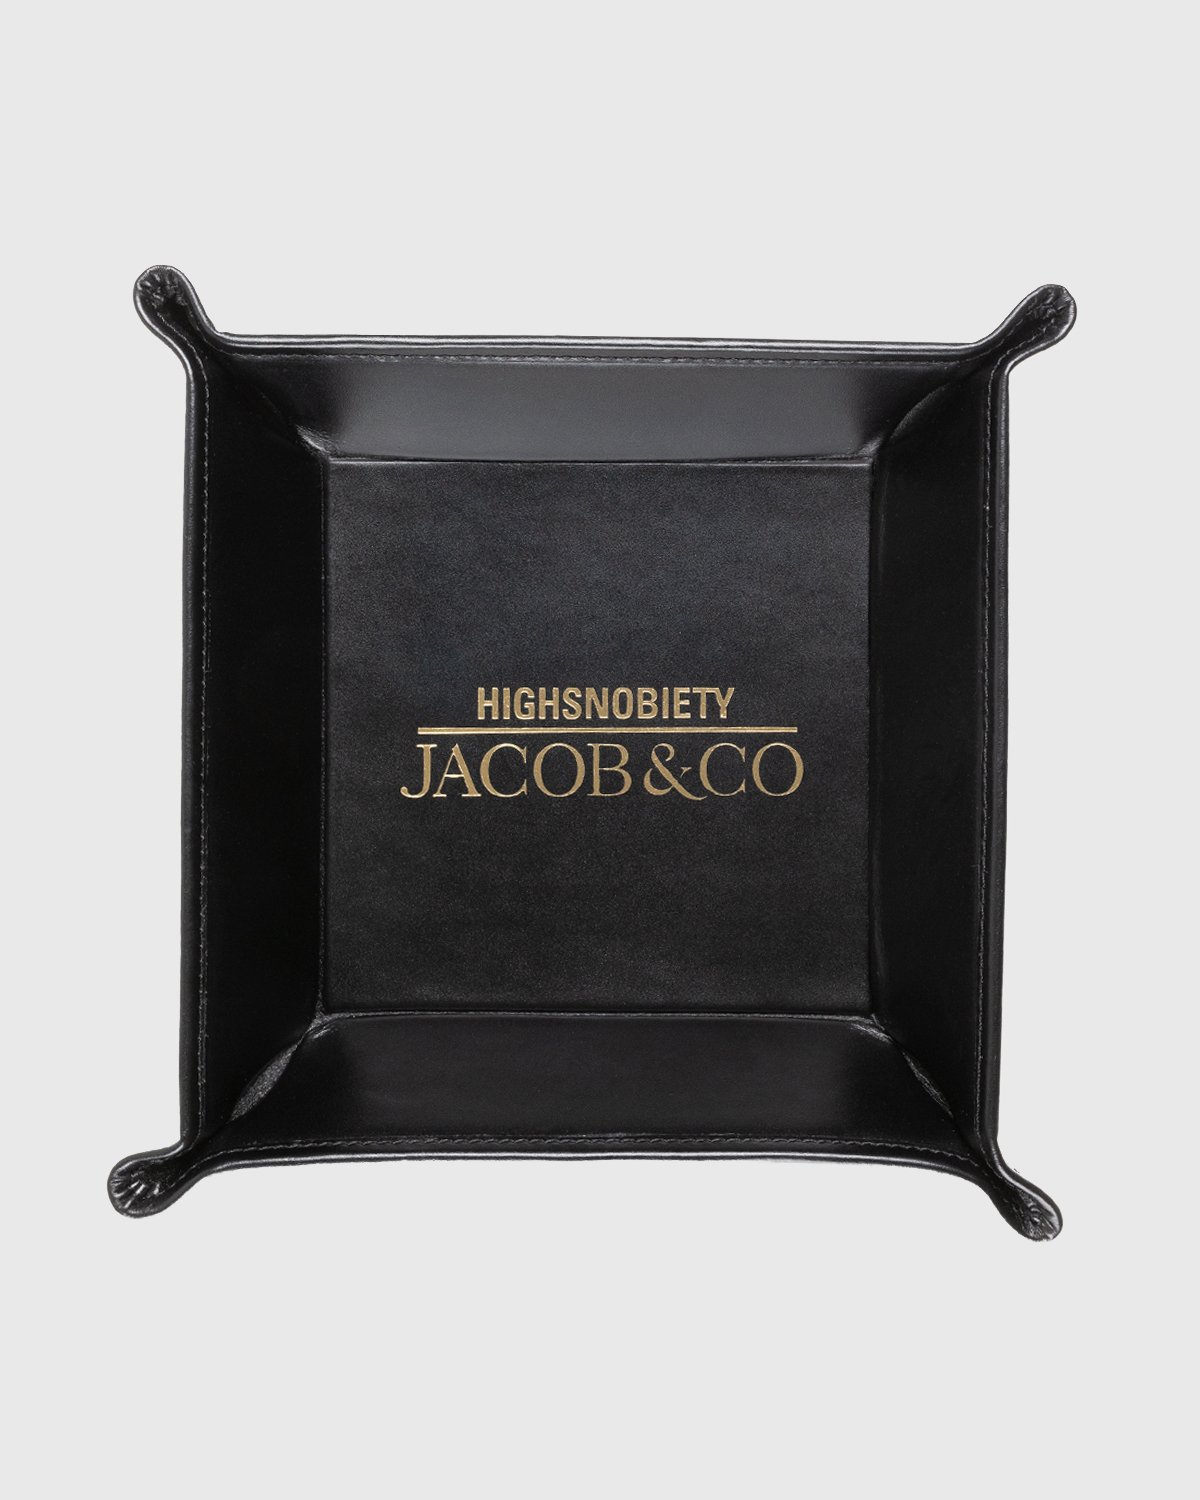 Jacob & Co. x Highsnobiety - Leather Key Tray Black - Lifestyle - Black - Image 1